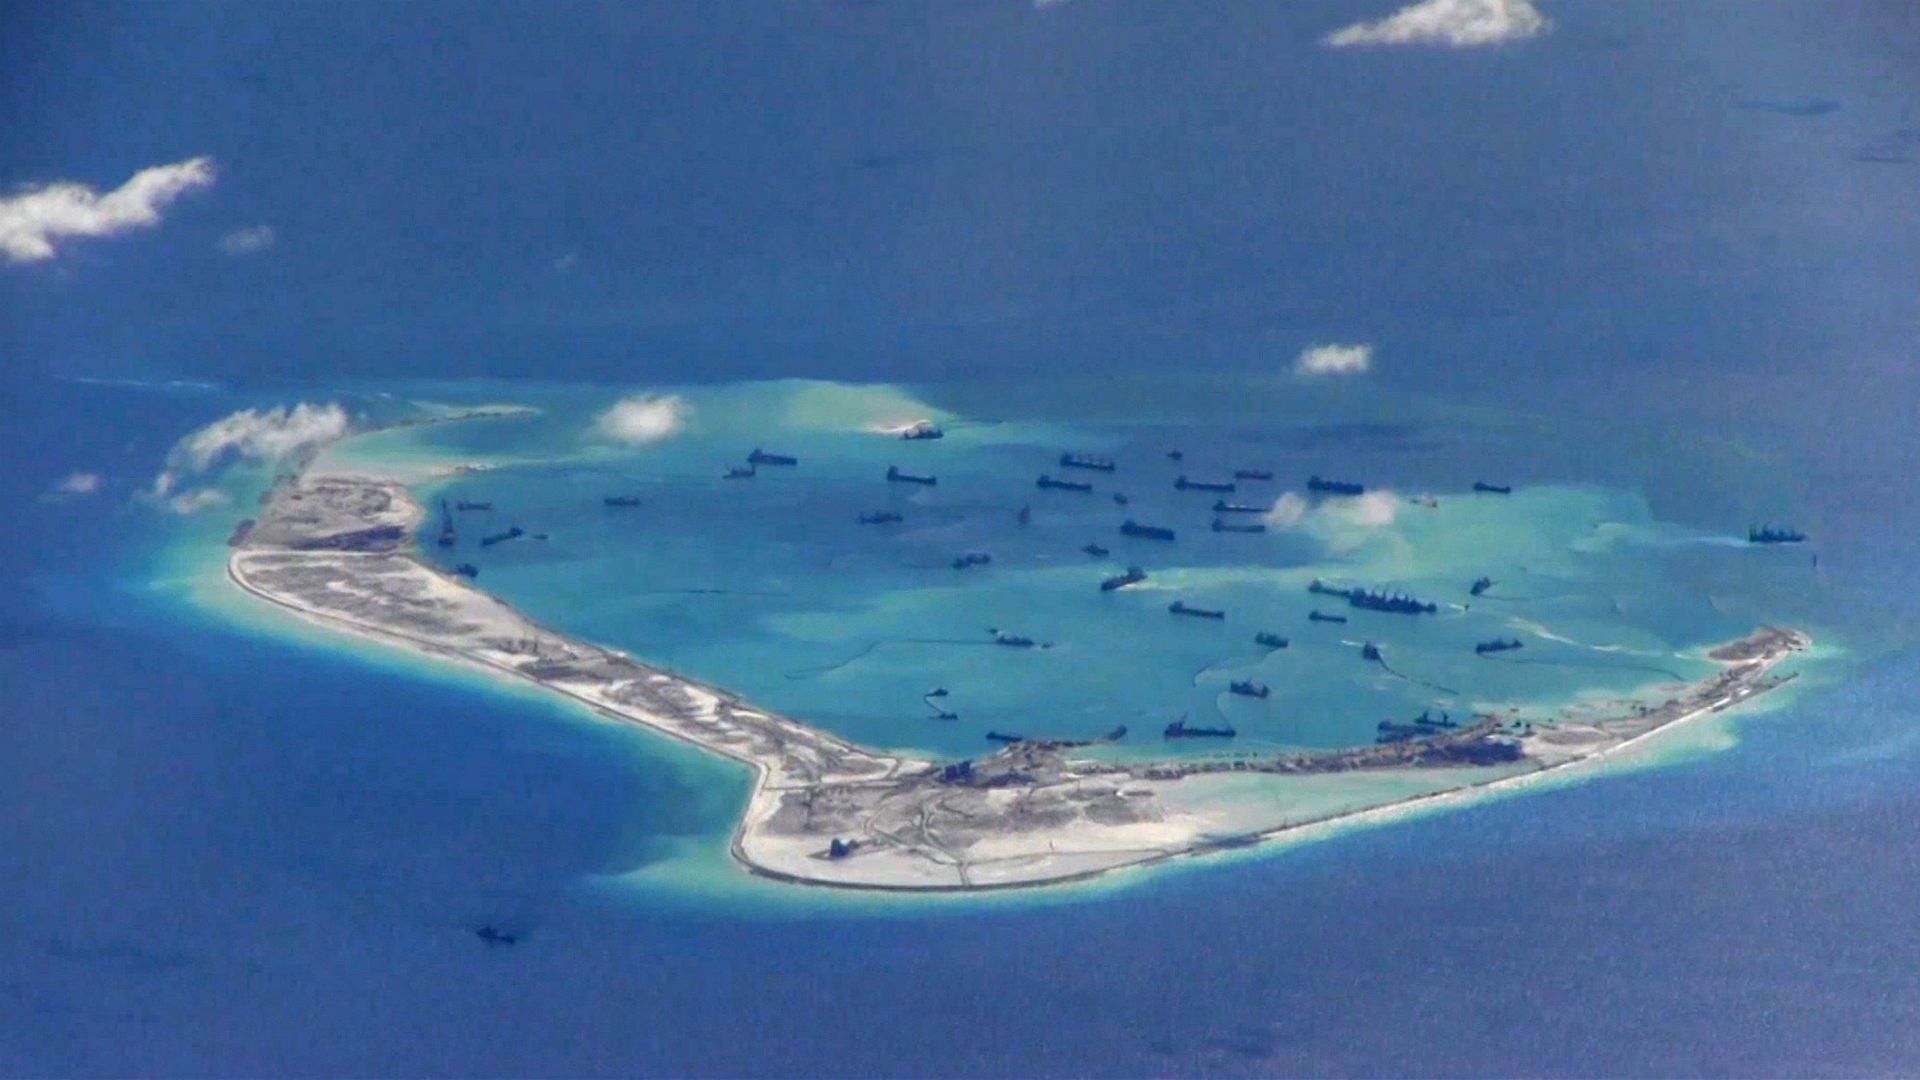 Movimientos de naves chinas cerca de las Spratly Islands en el Mar Chino Meridional en una foto de archivo de la Marina estadounidense del 21 mayo de 2015 (Reuters)